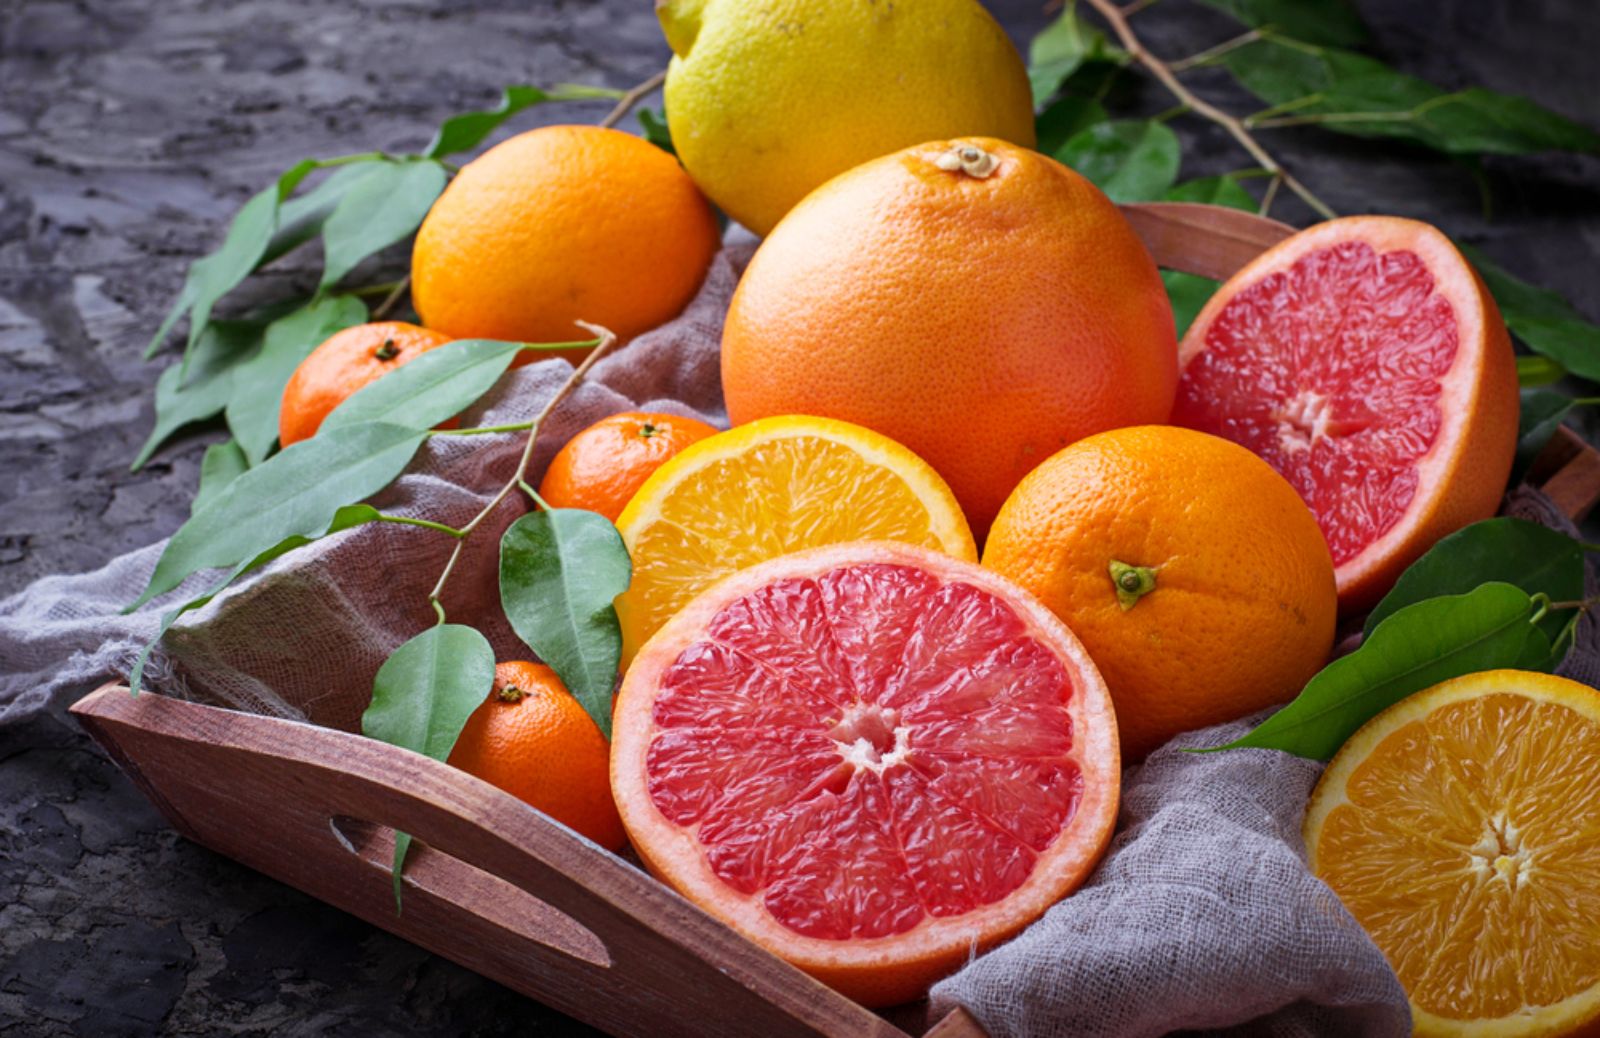 Frutta di stagione: cosa comprare e mangiare a marzo